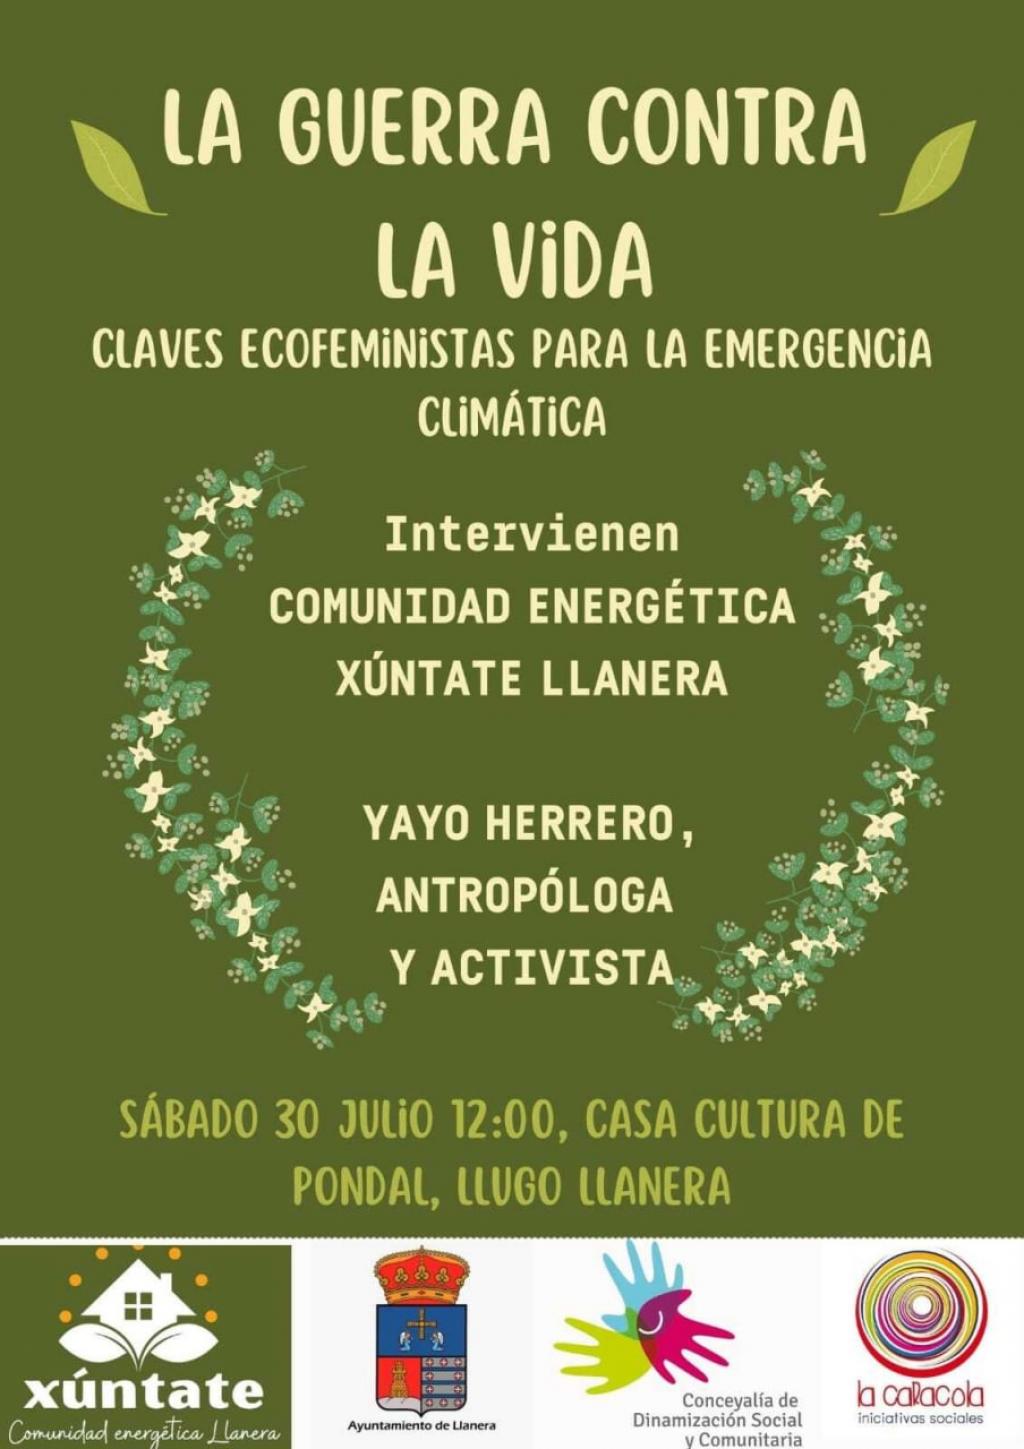 El Tapin - La Casa de Cultura de Lugo de Llanera acogerá la charla “La Guerra Contra la vida. Claves Ecofeministas para la emergencia climática” el 30 de julio